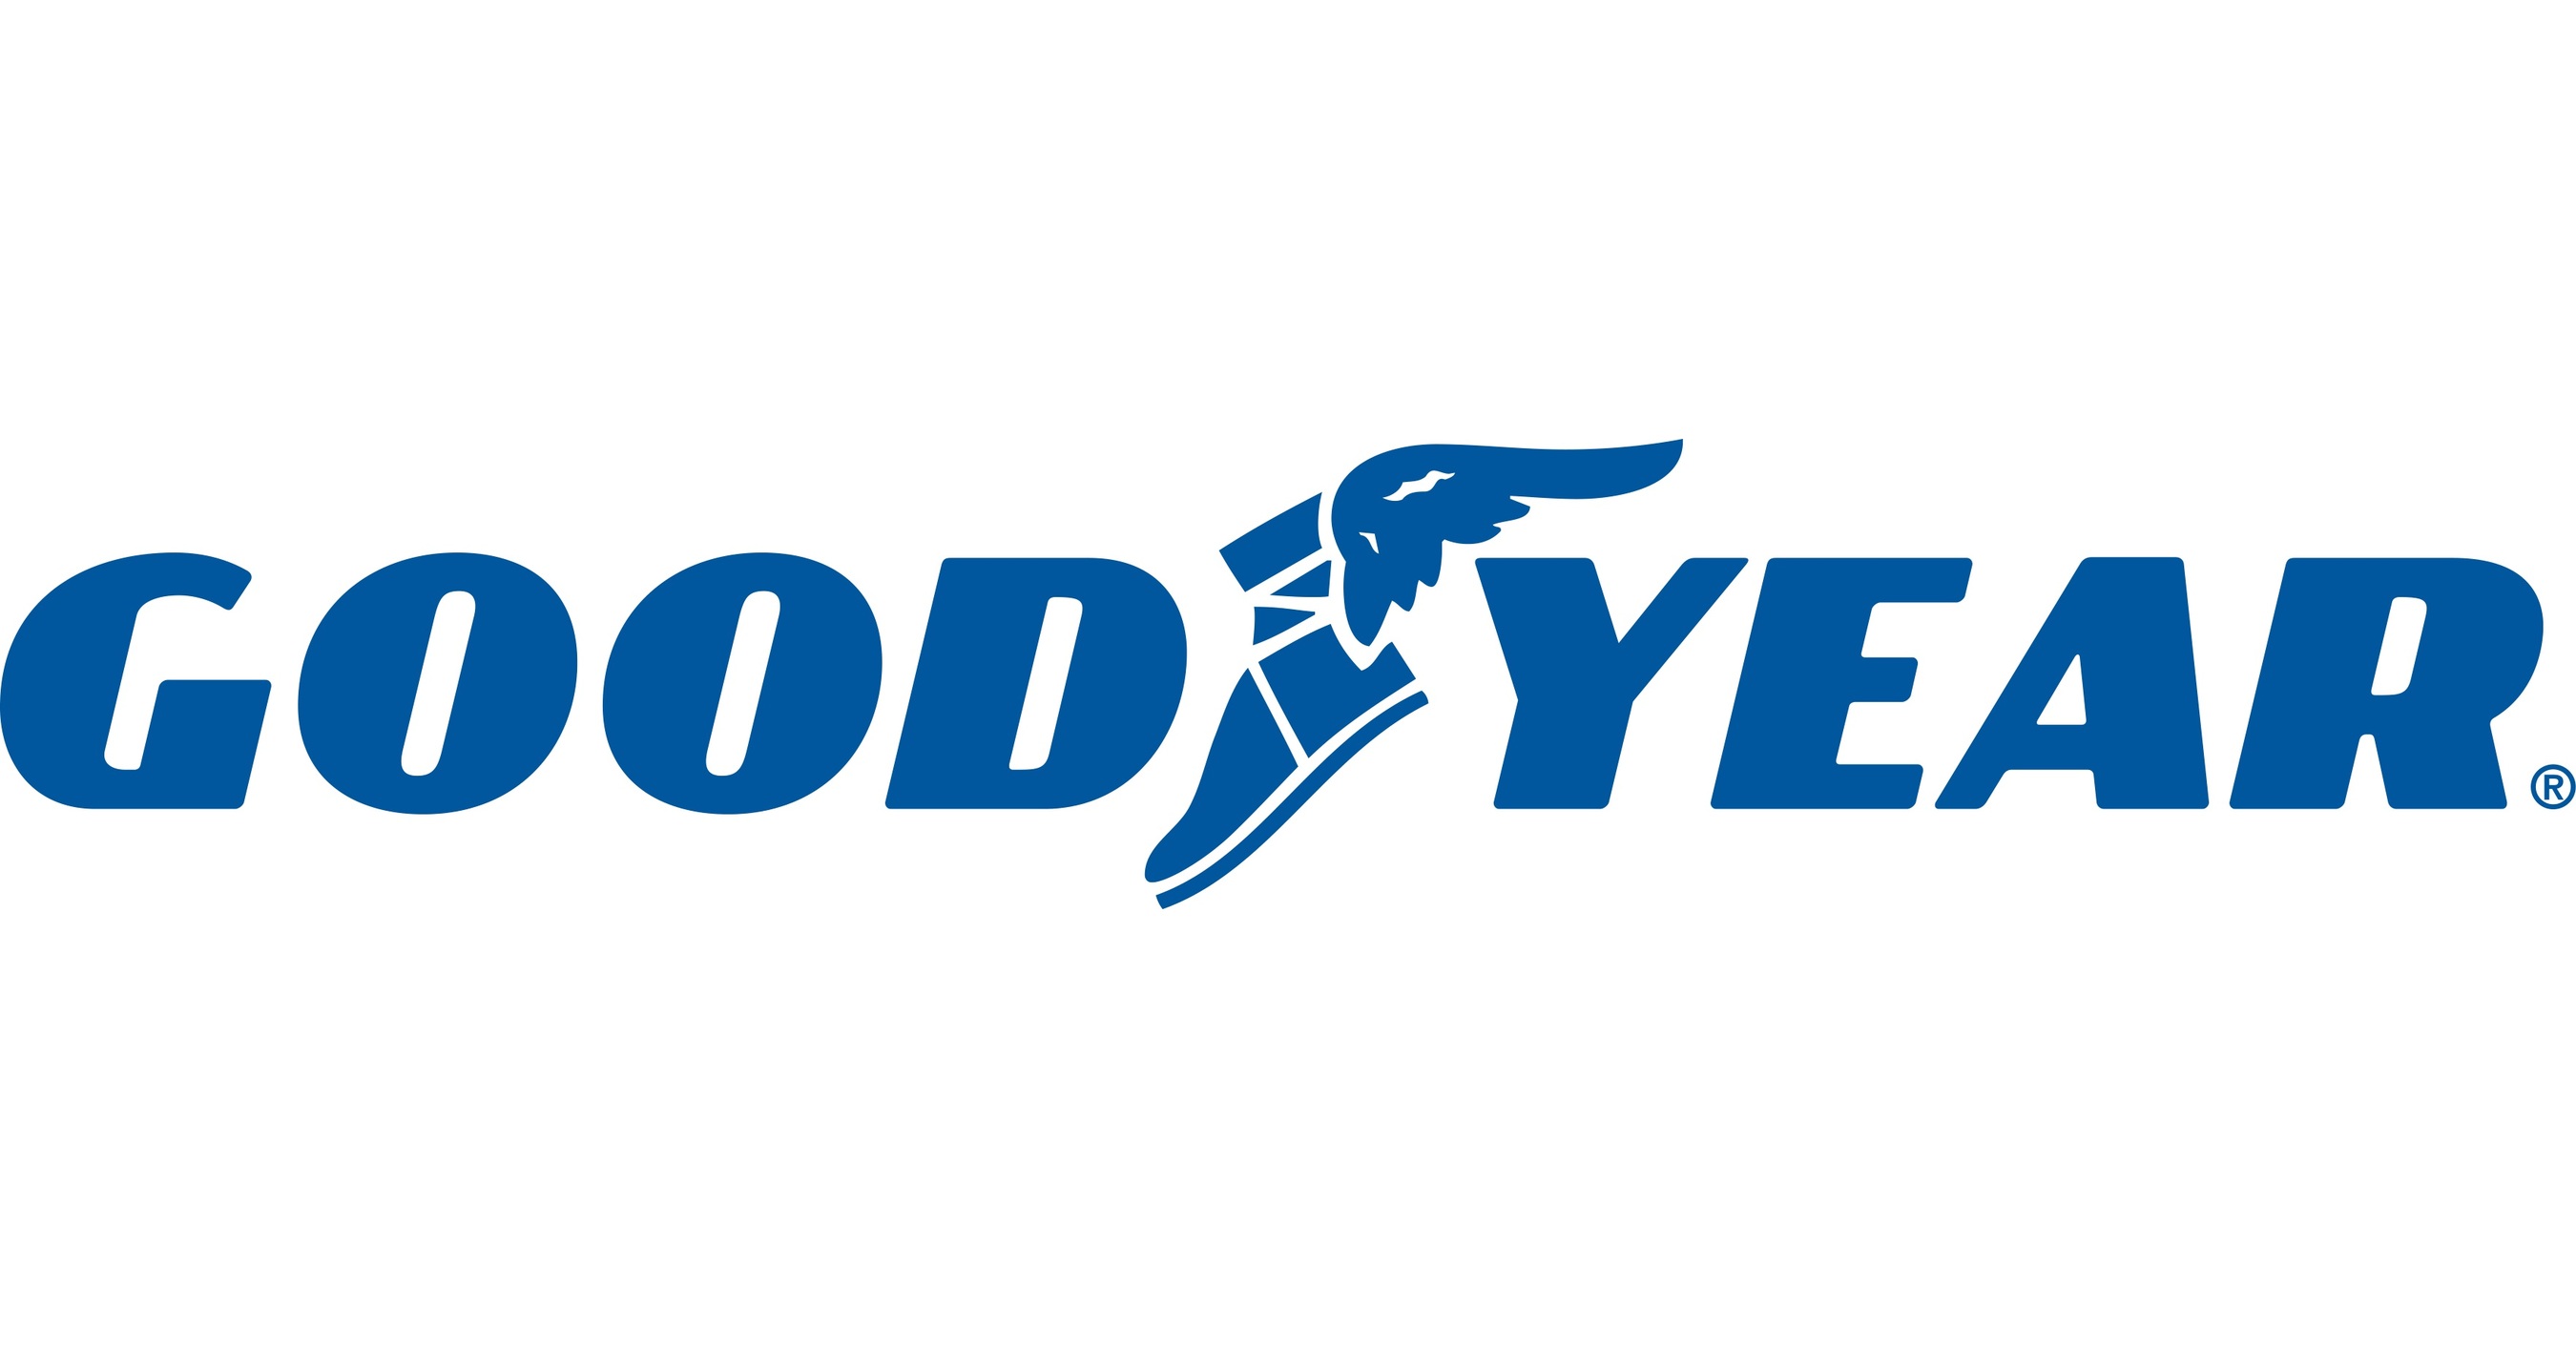 Goodyear: réduire les coûts d'un milliard de dollars - Trends